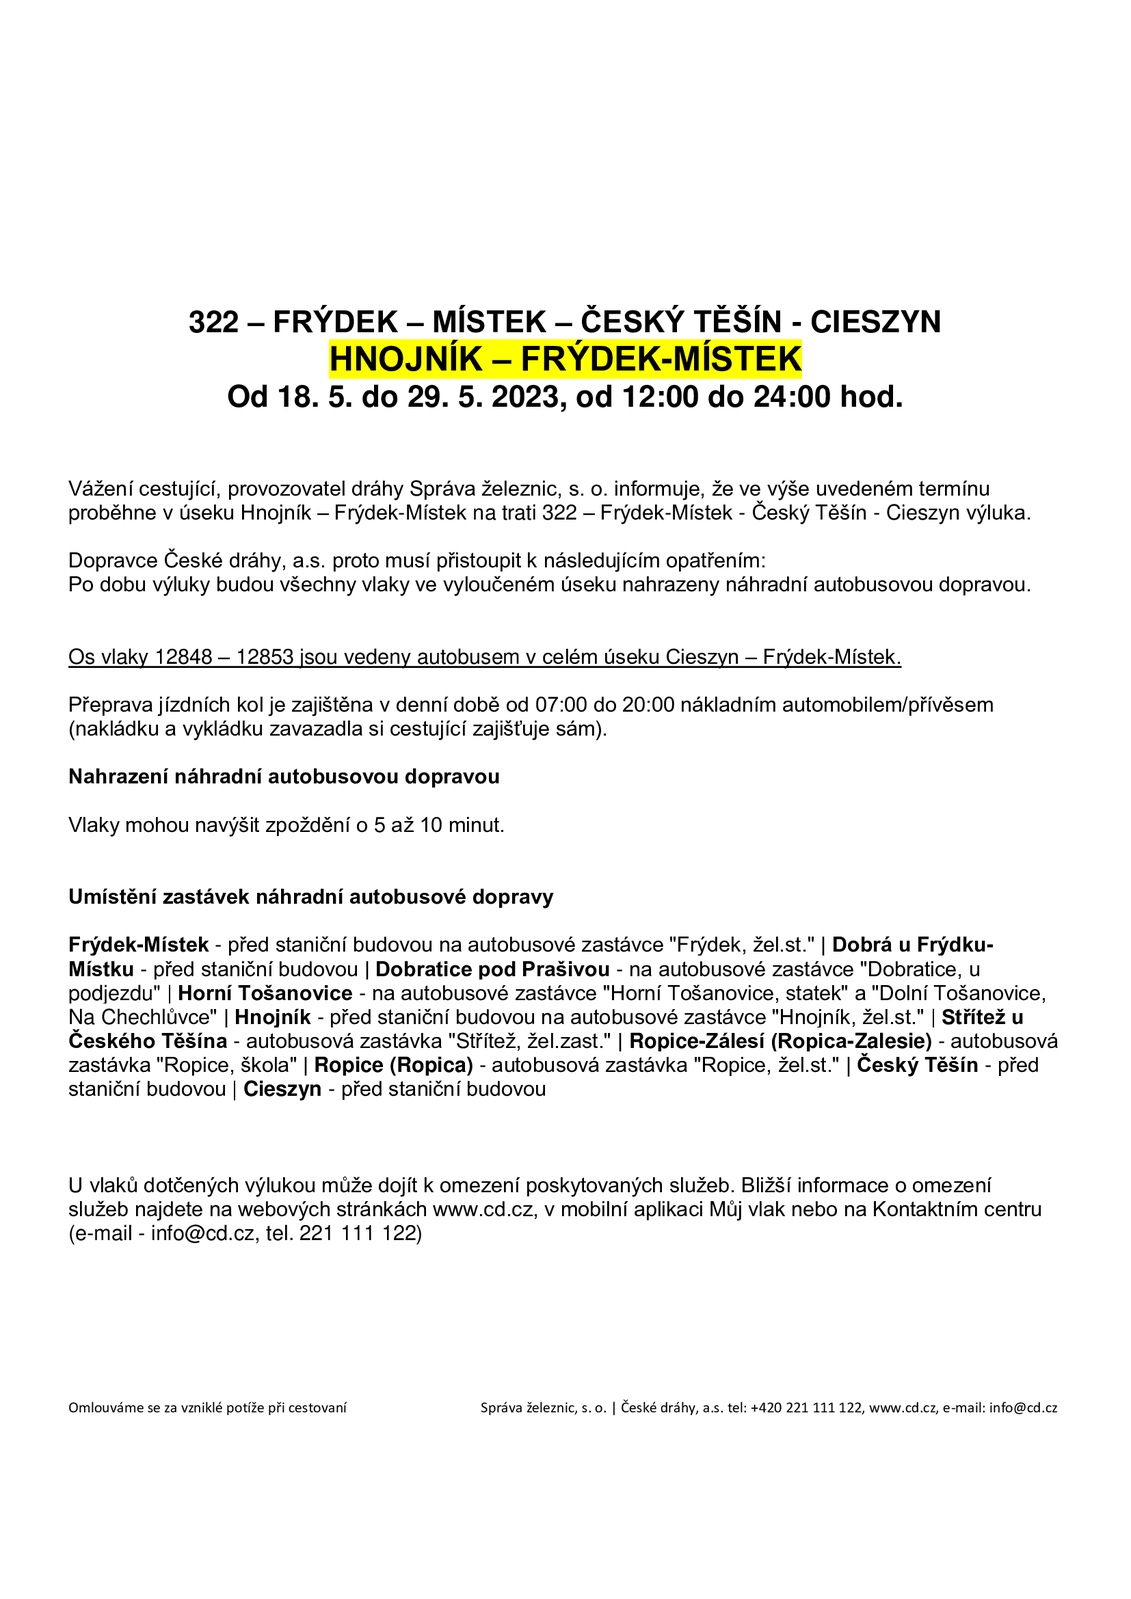 Hnojník-FM-18.5.-29.5.2023-zrušení-kyvadlové-dopravy.jpg